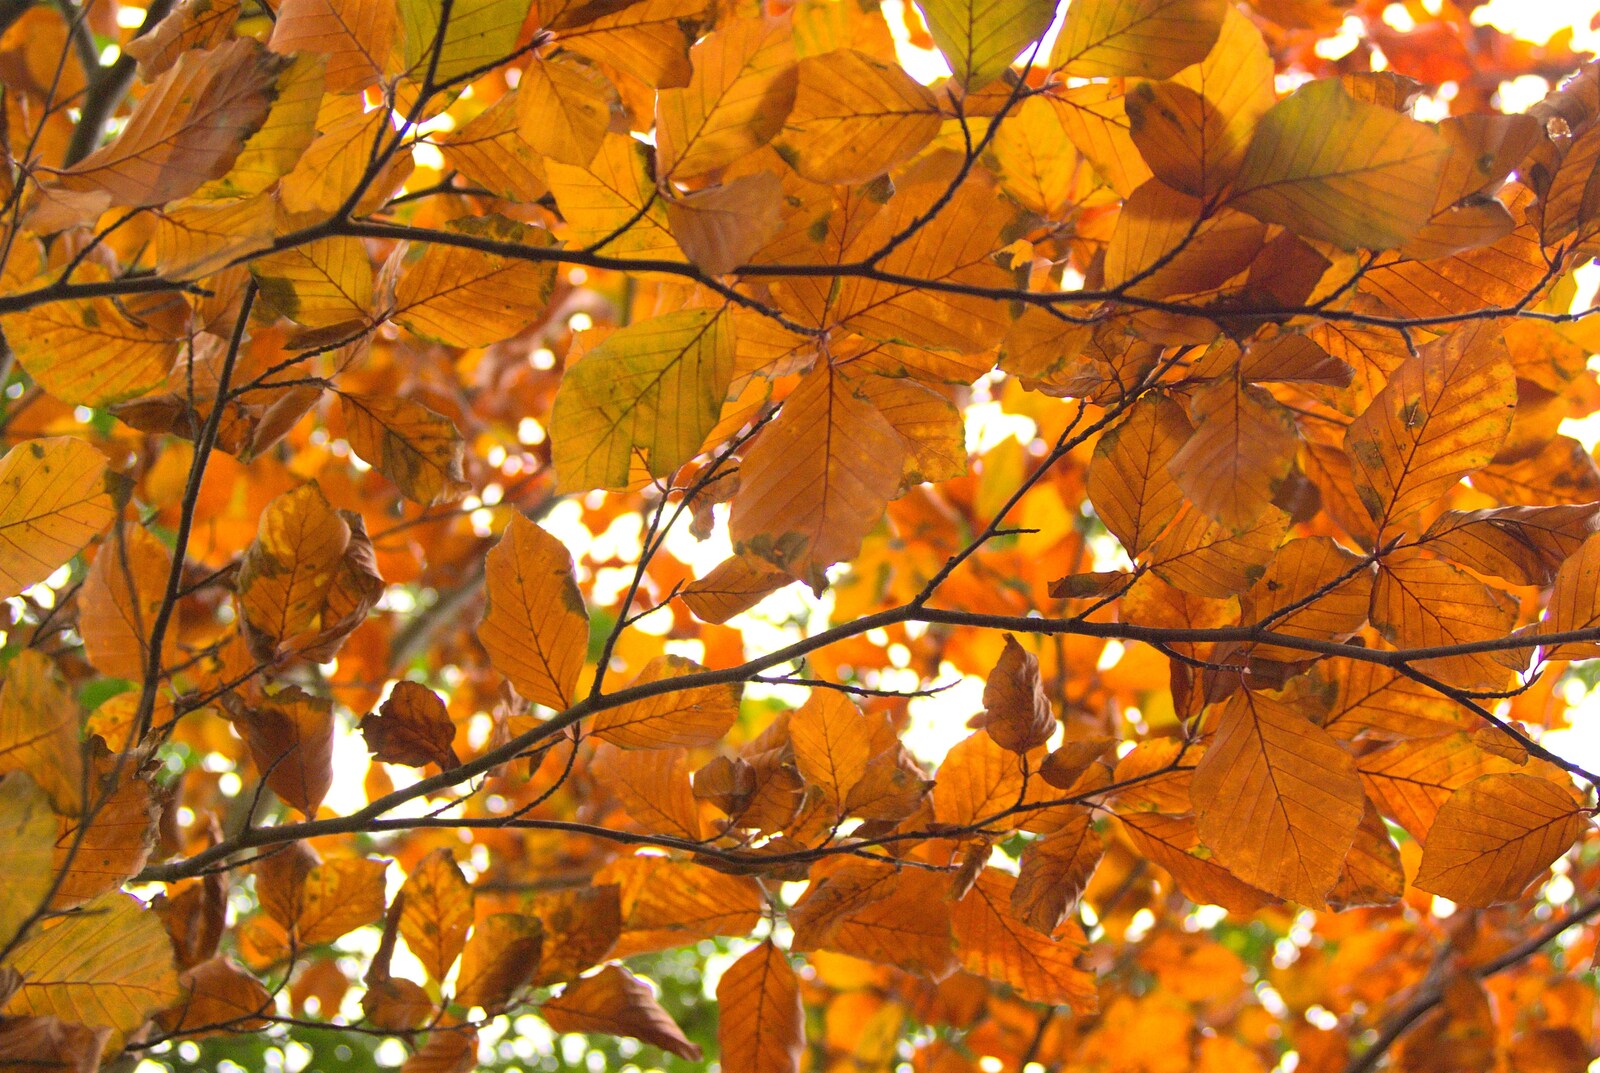 Golden Autumn leaves from Autumn in Thornham Estate, Thornham, Suffolk - 6th November 2011